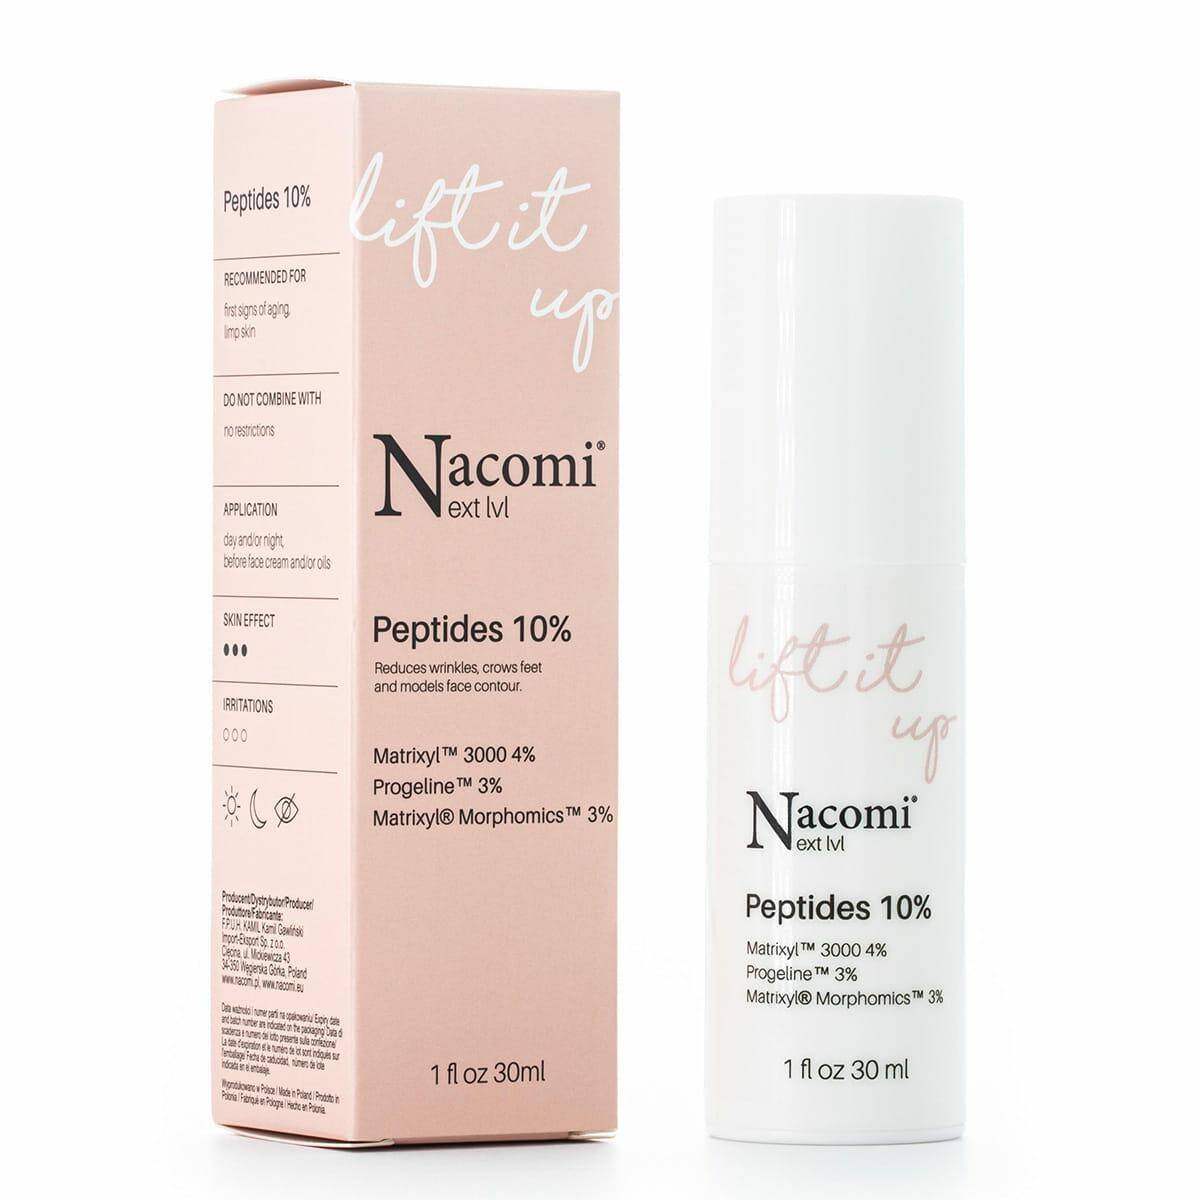 Nacomi next lvl serum Peptides 10% 30ml